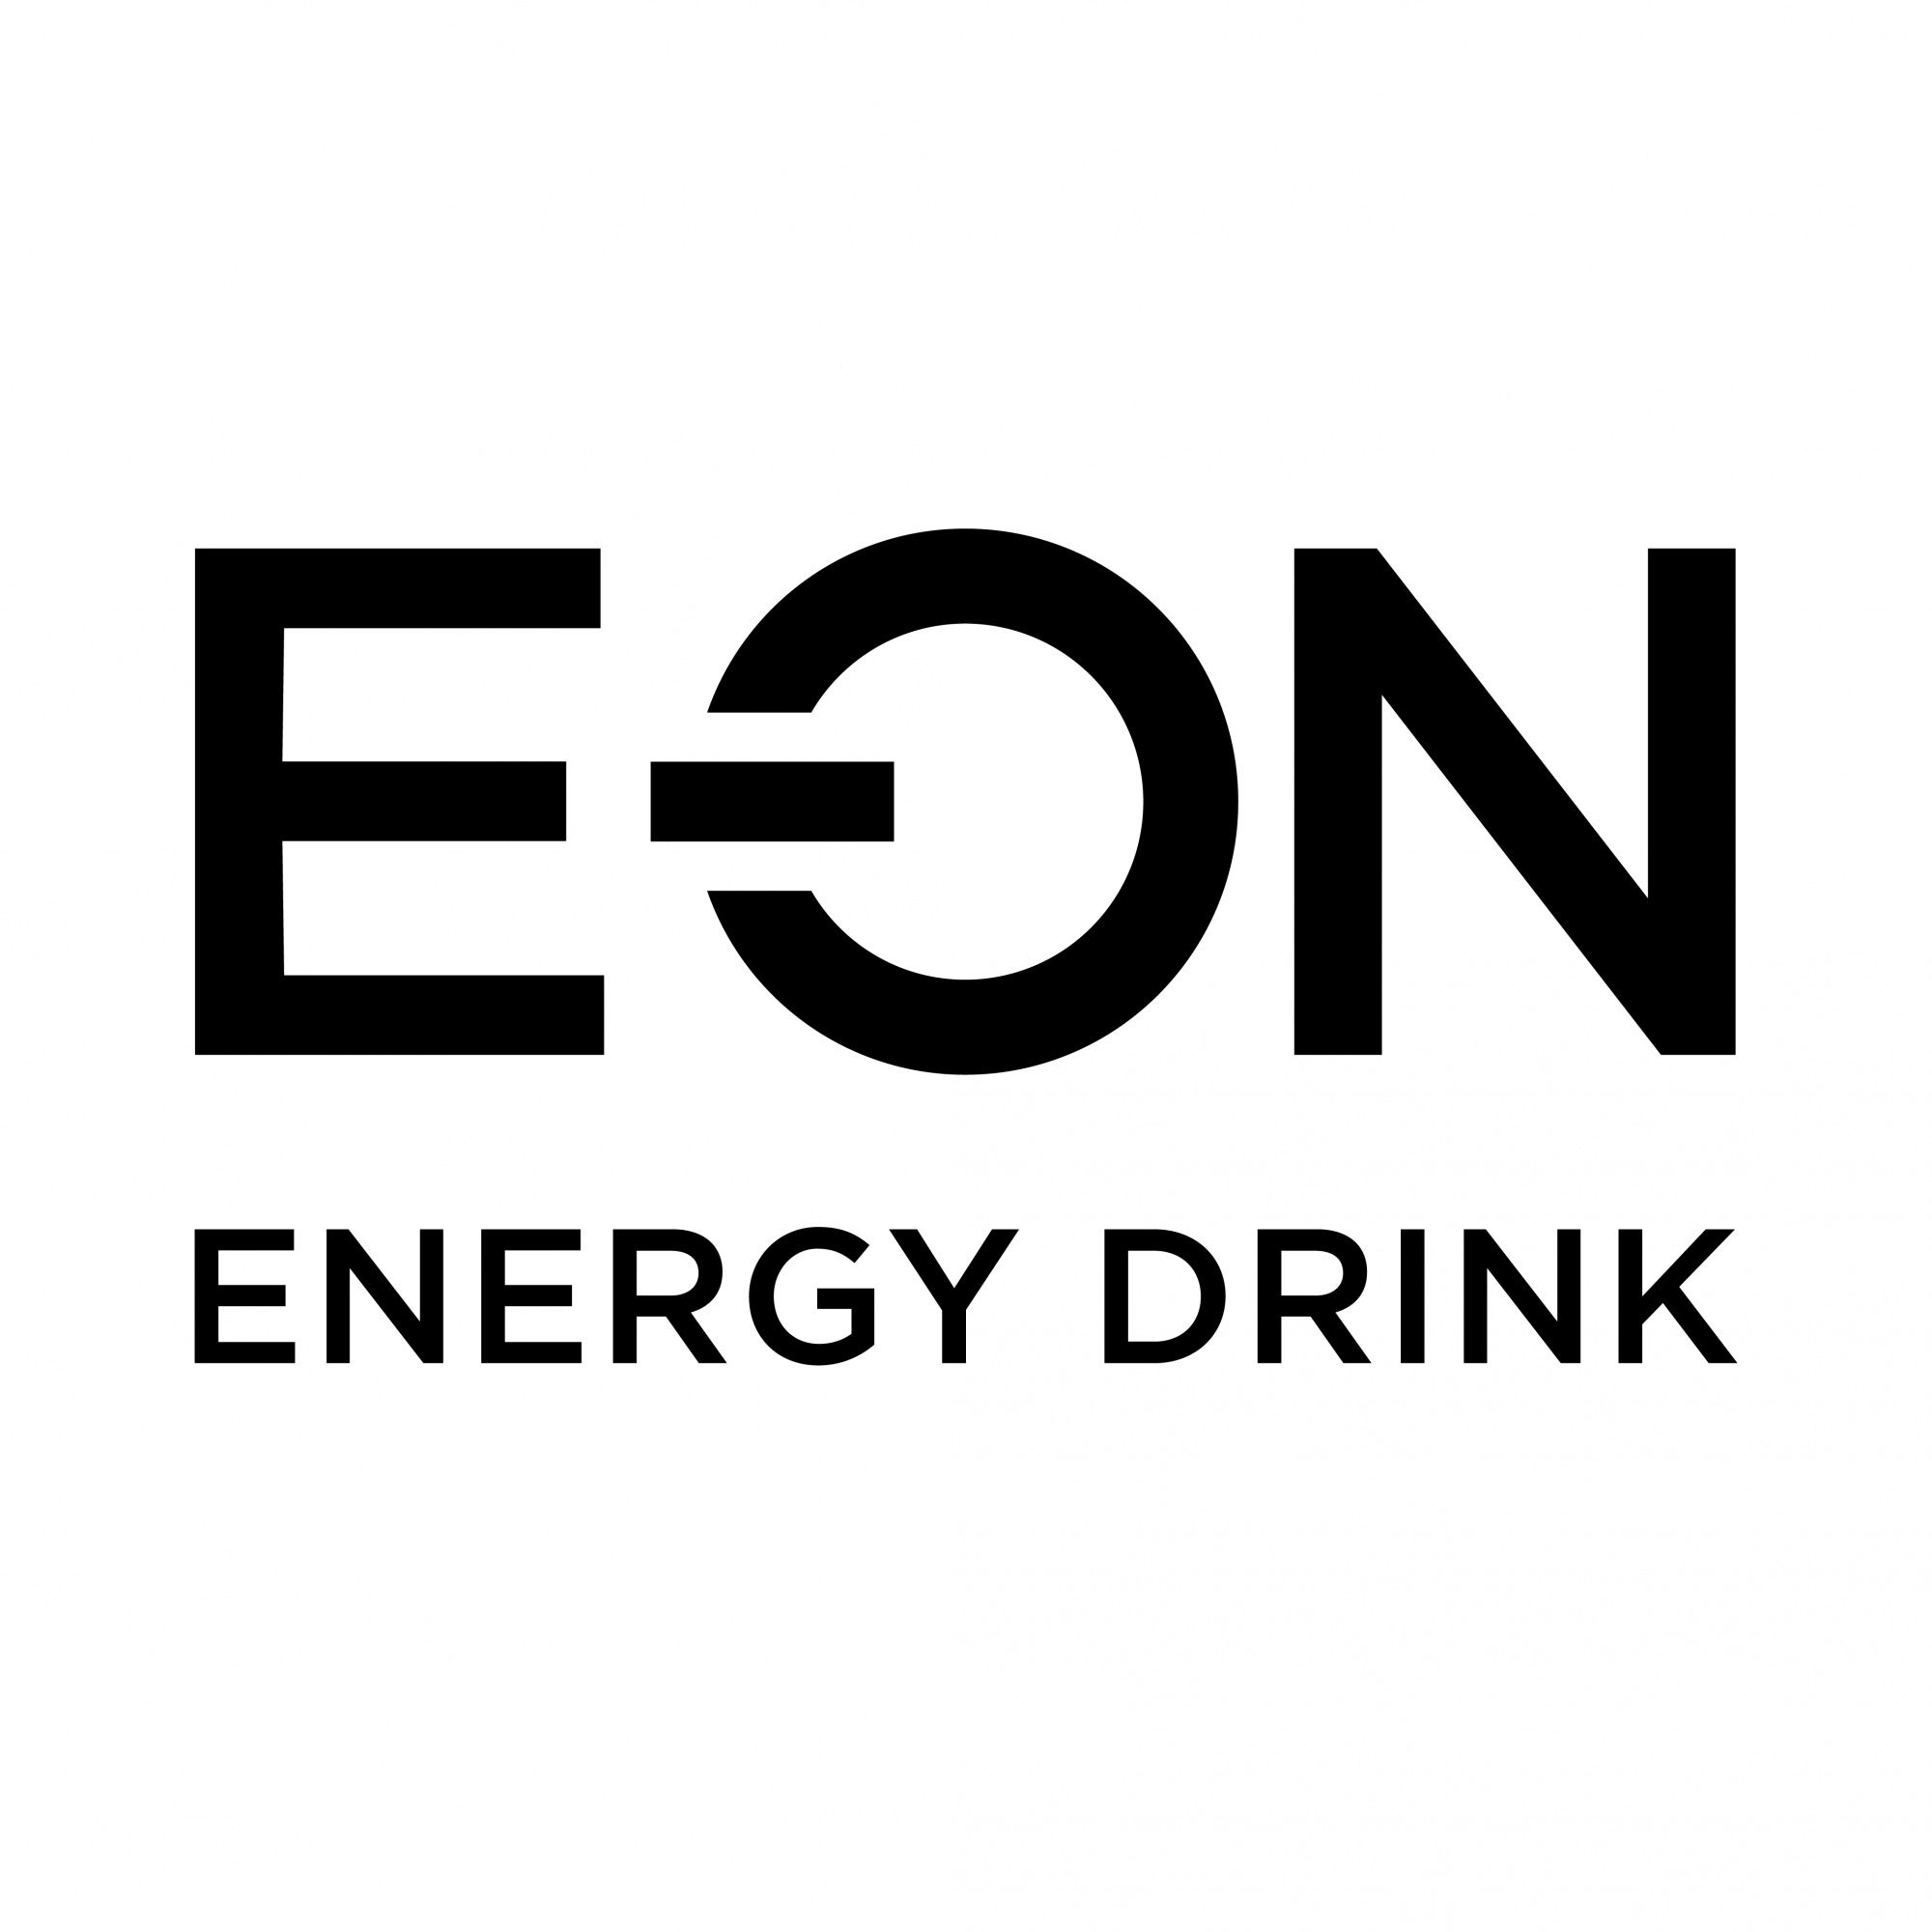 Надпись лит энерджи. Eon логотип. E-on логотип. Eon Energy Drink логотип.